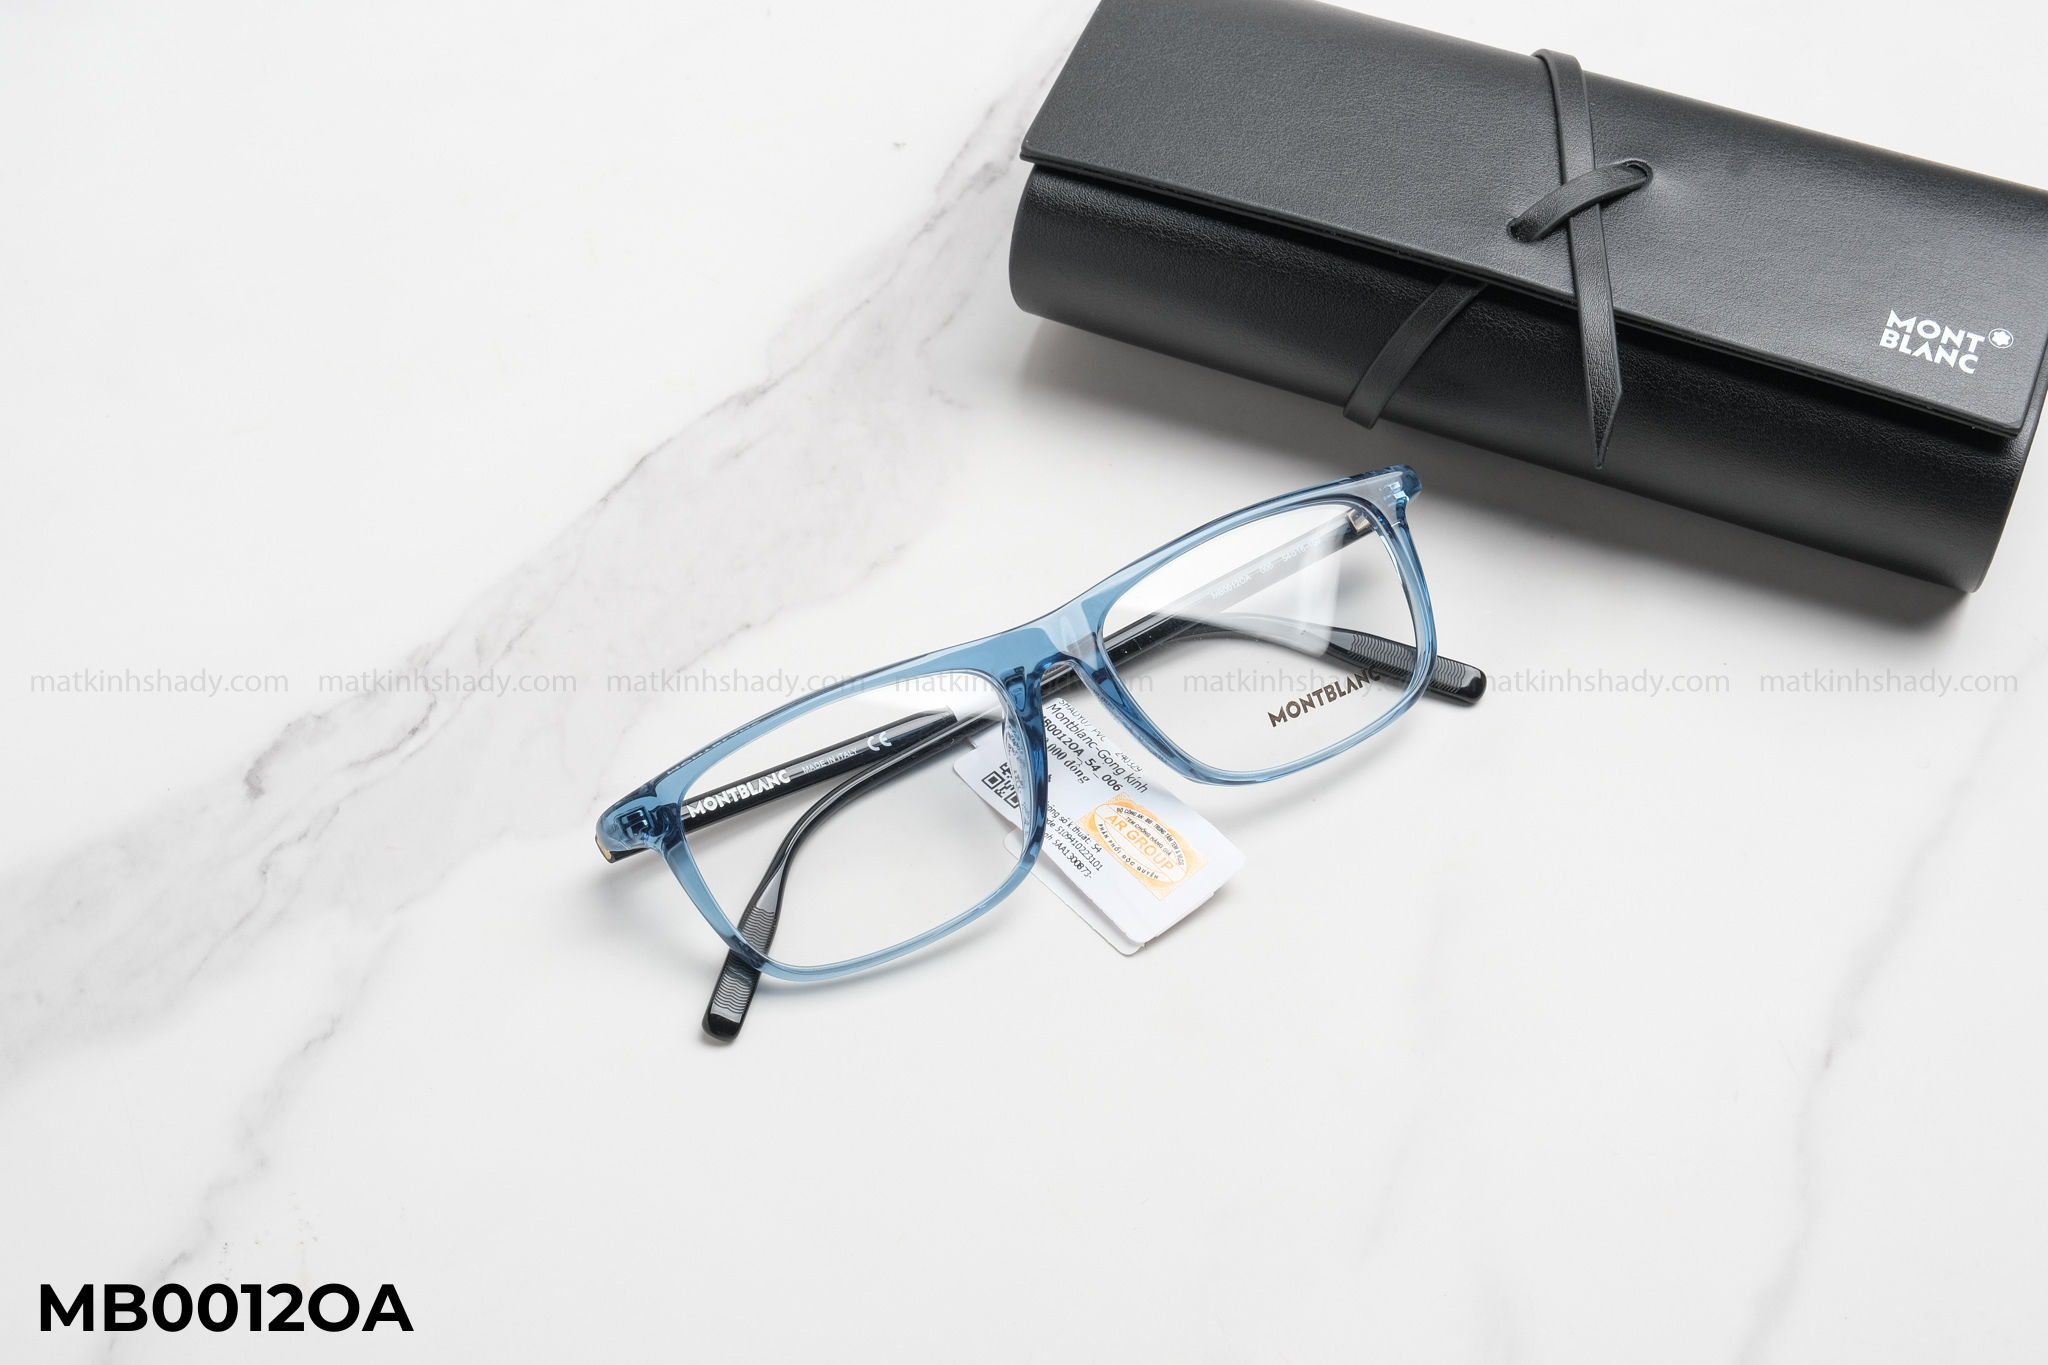  Montblanc Eyewear - Glasses - MB0012 